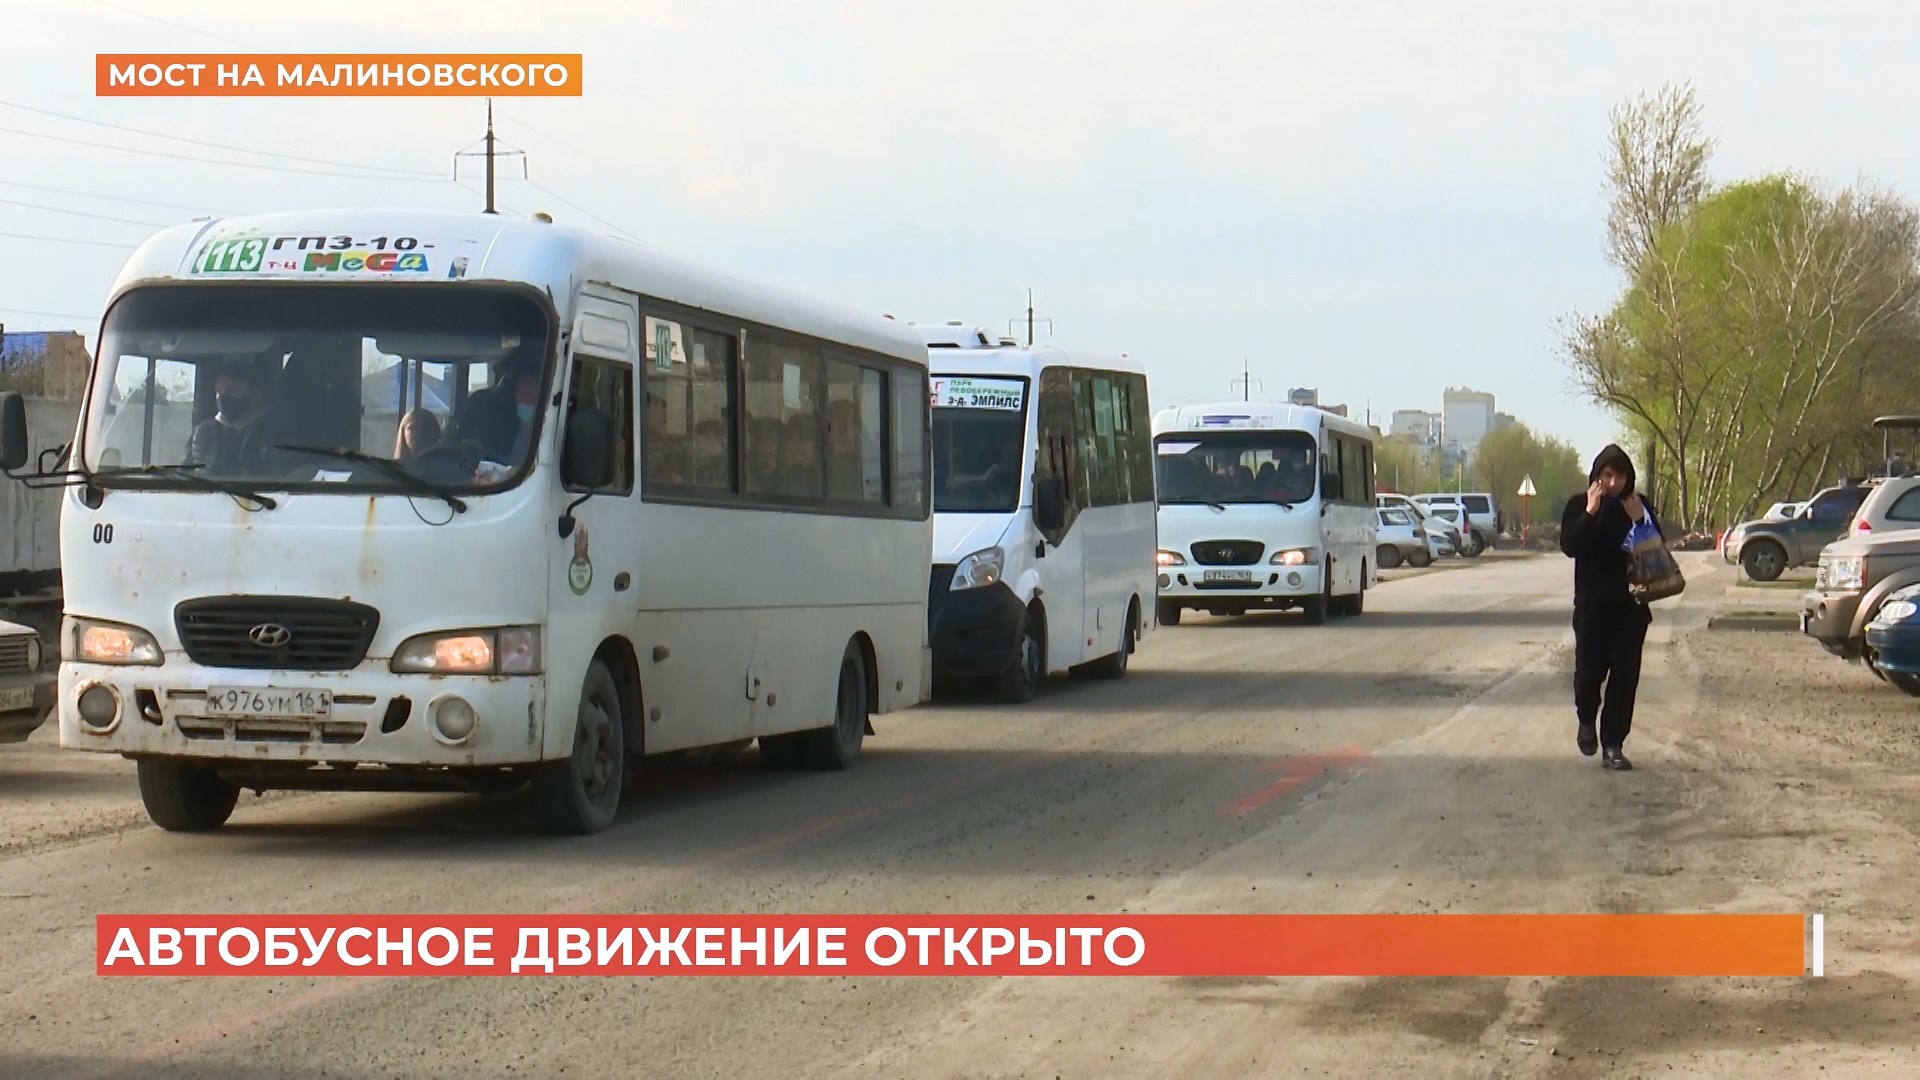 Движение запущено: автобусы теперь будут ездить через новый мост Малиновского